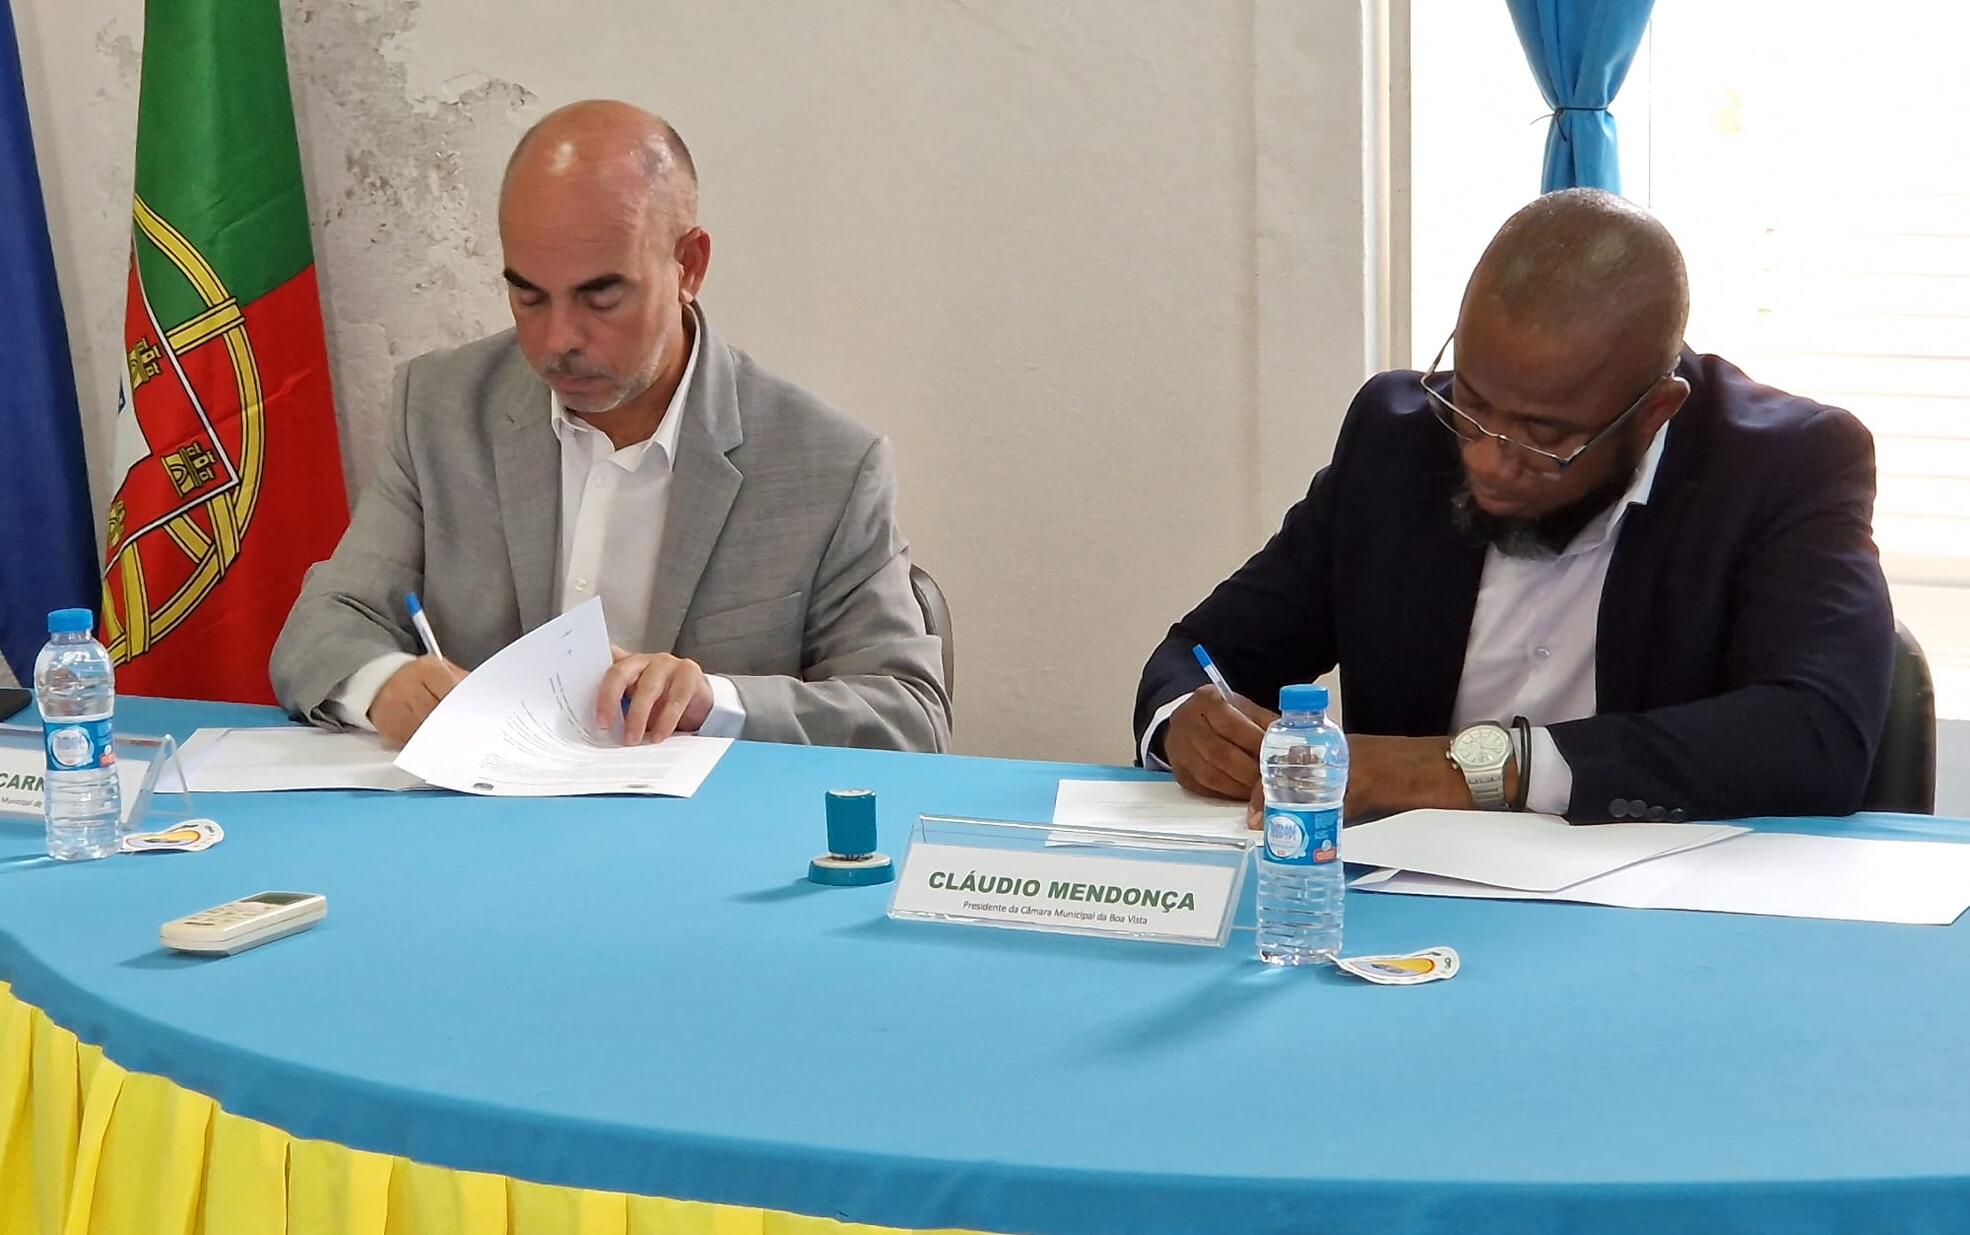 Municípios de Lagoa e Boa Vista (Cabo Verde) celebram protocolo de Geminação